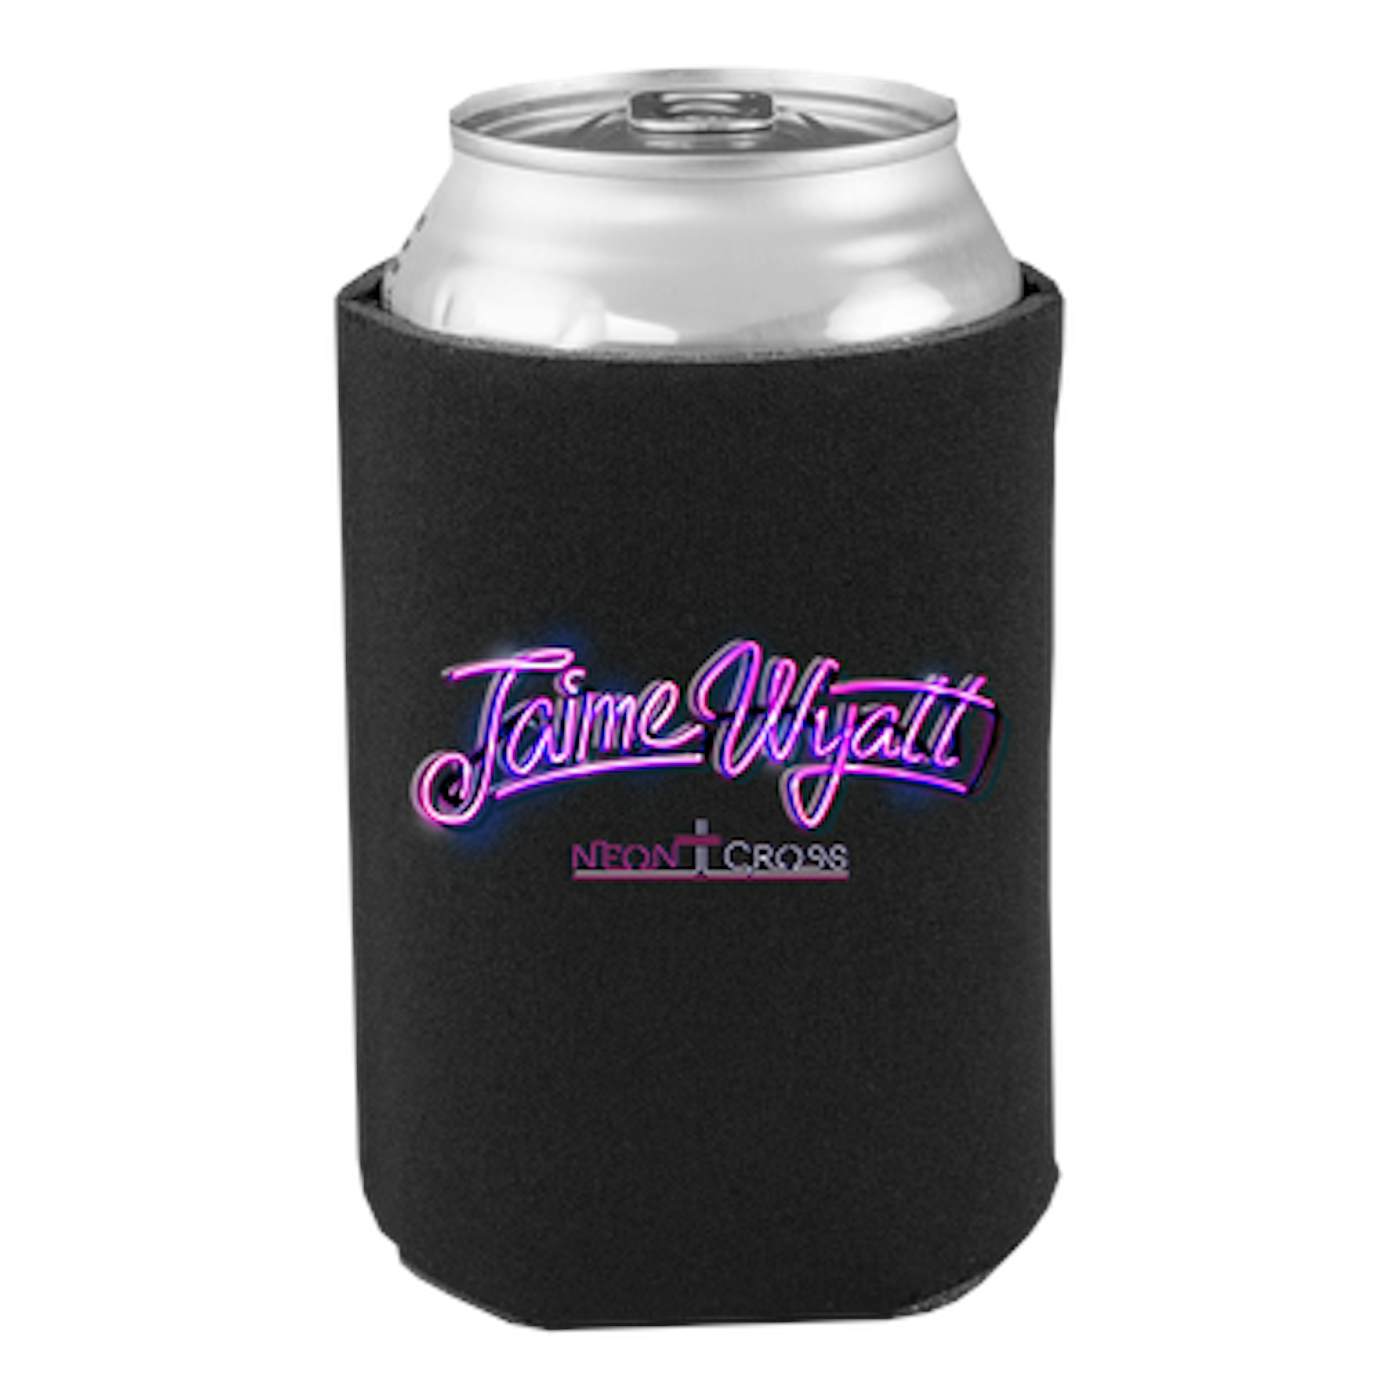 Jaime Wyatt Neon Cross Drink Cooler